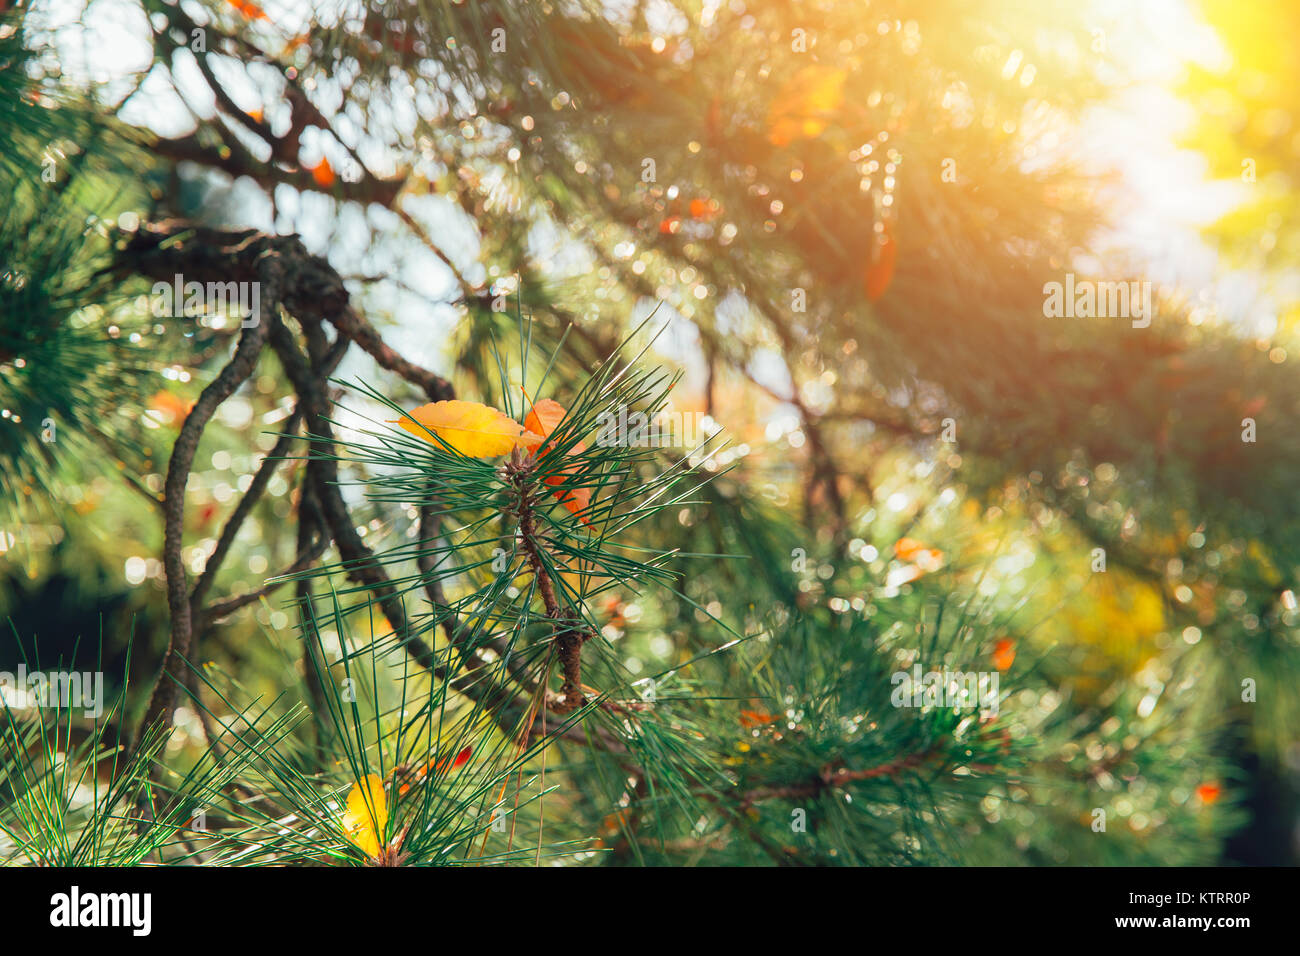 Japan Holz Wald Kiefer in Herbst Herbst Jahreszeit mit Morgen Sonnenschein Stockfoto